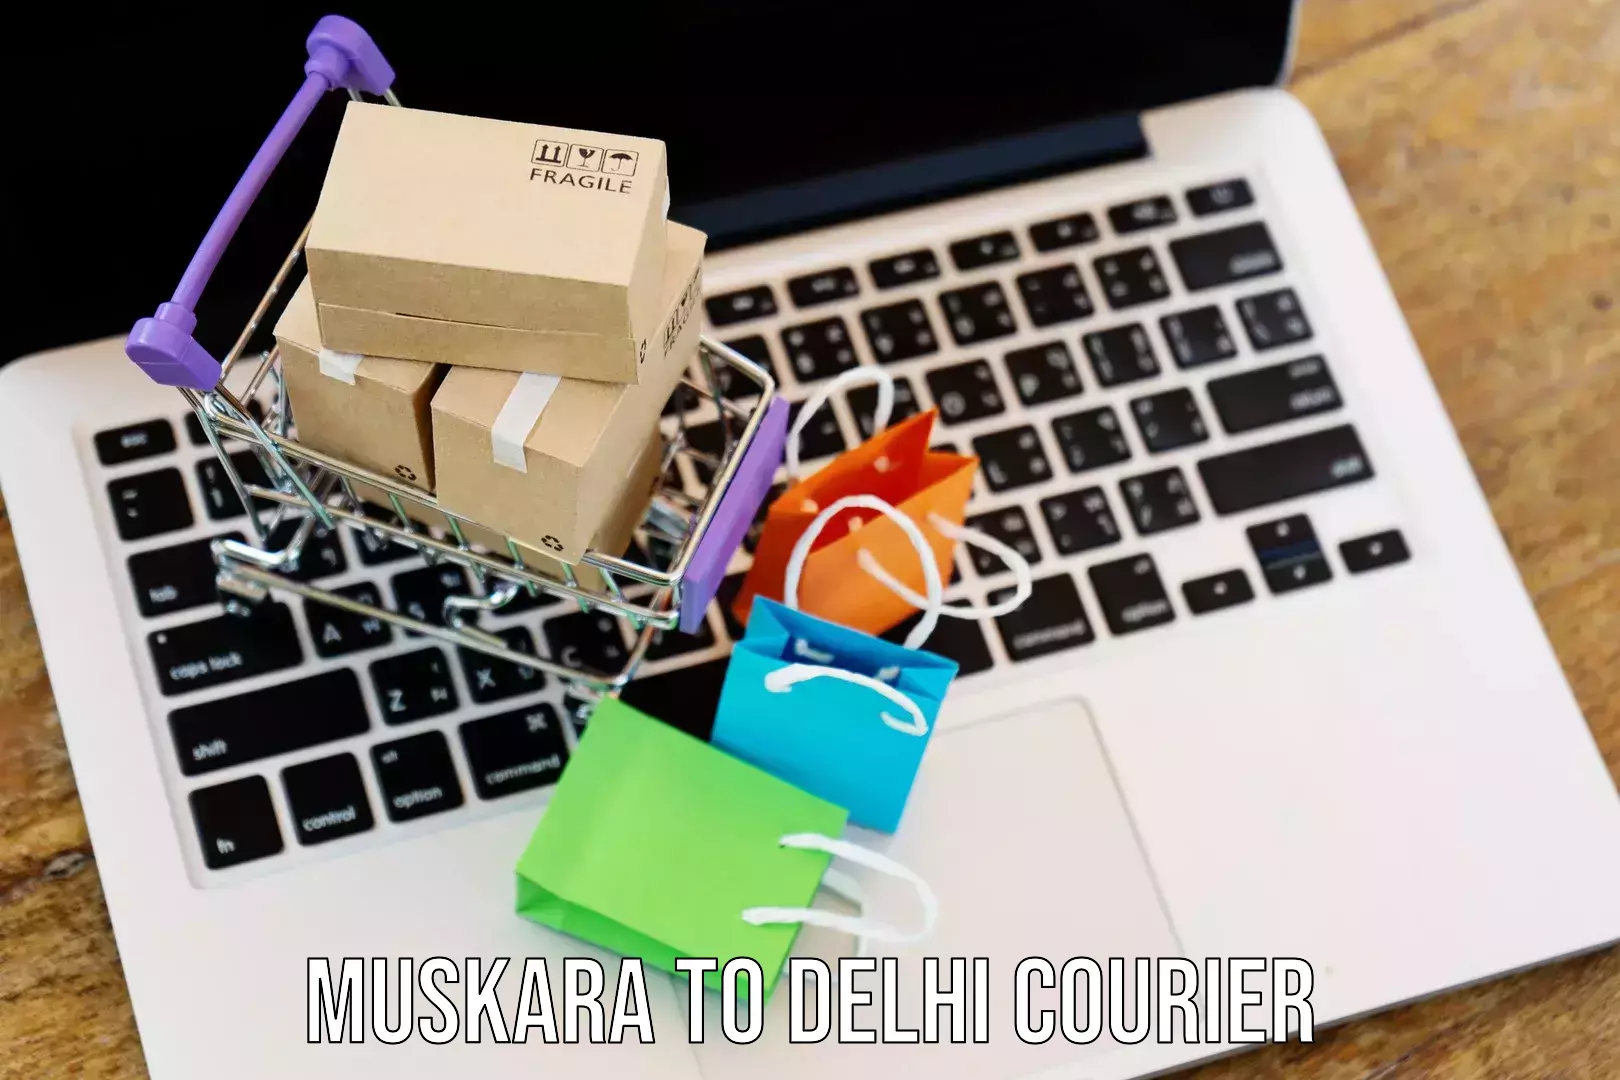 Door-to-door freight service Muskara to IIT Delhi